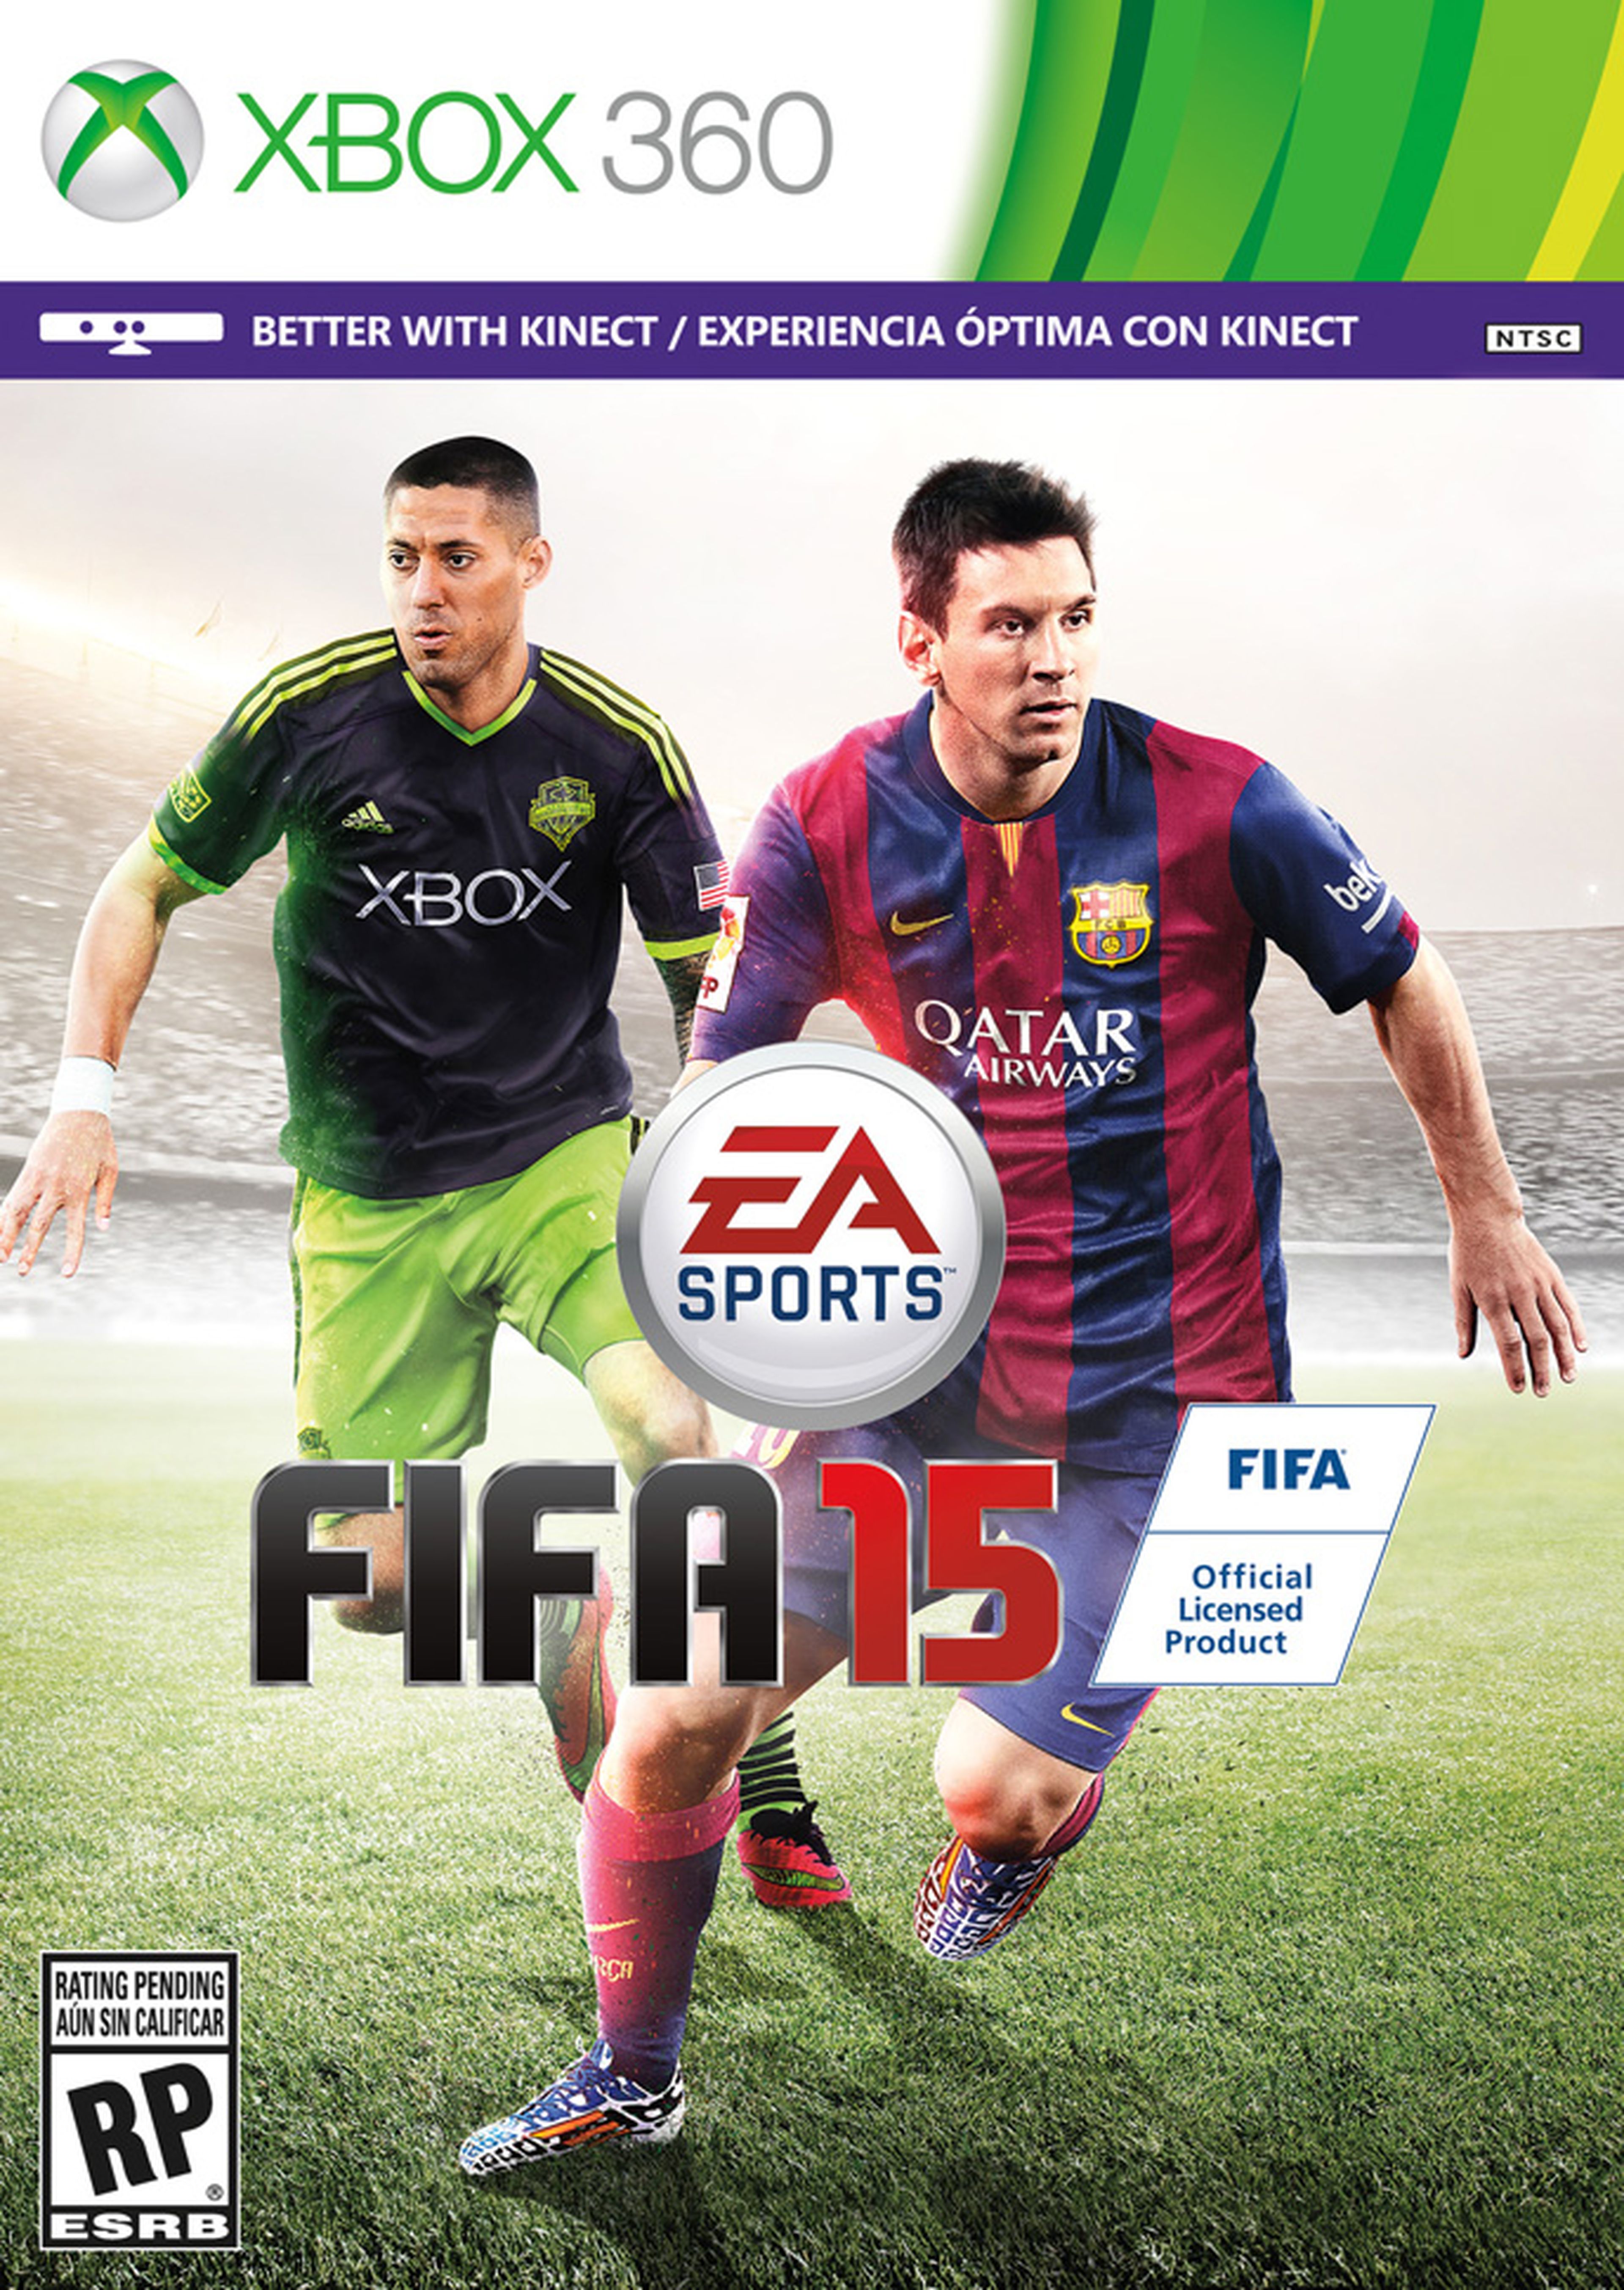 Clint Dempsey acompañará a Messi en la portada de FIFA 15 en EEUU